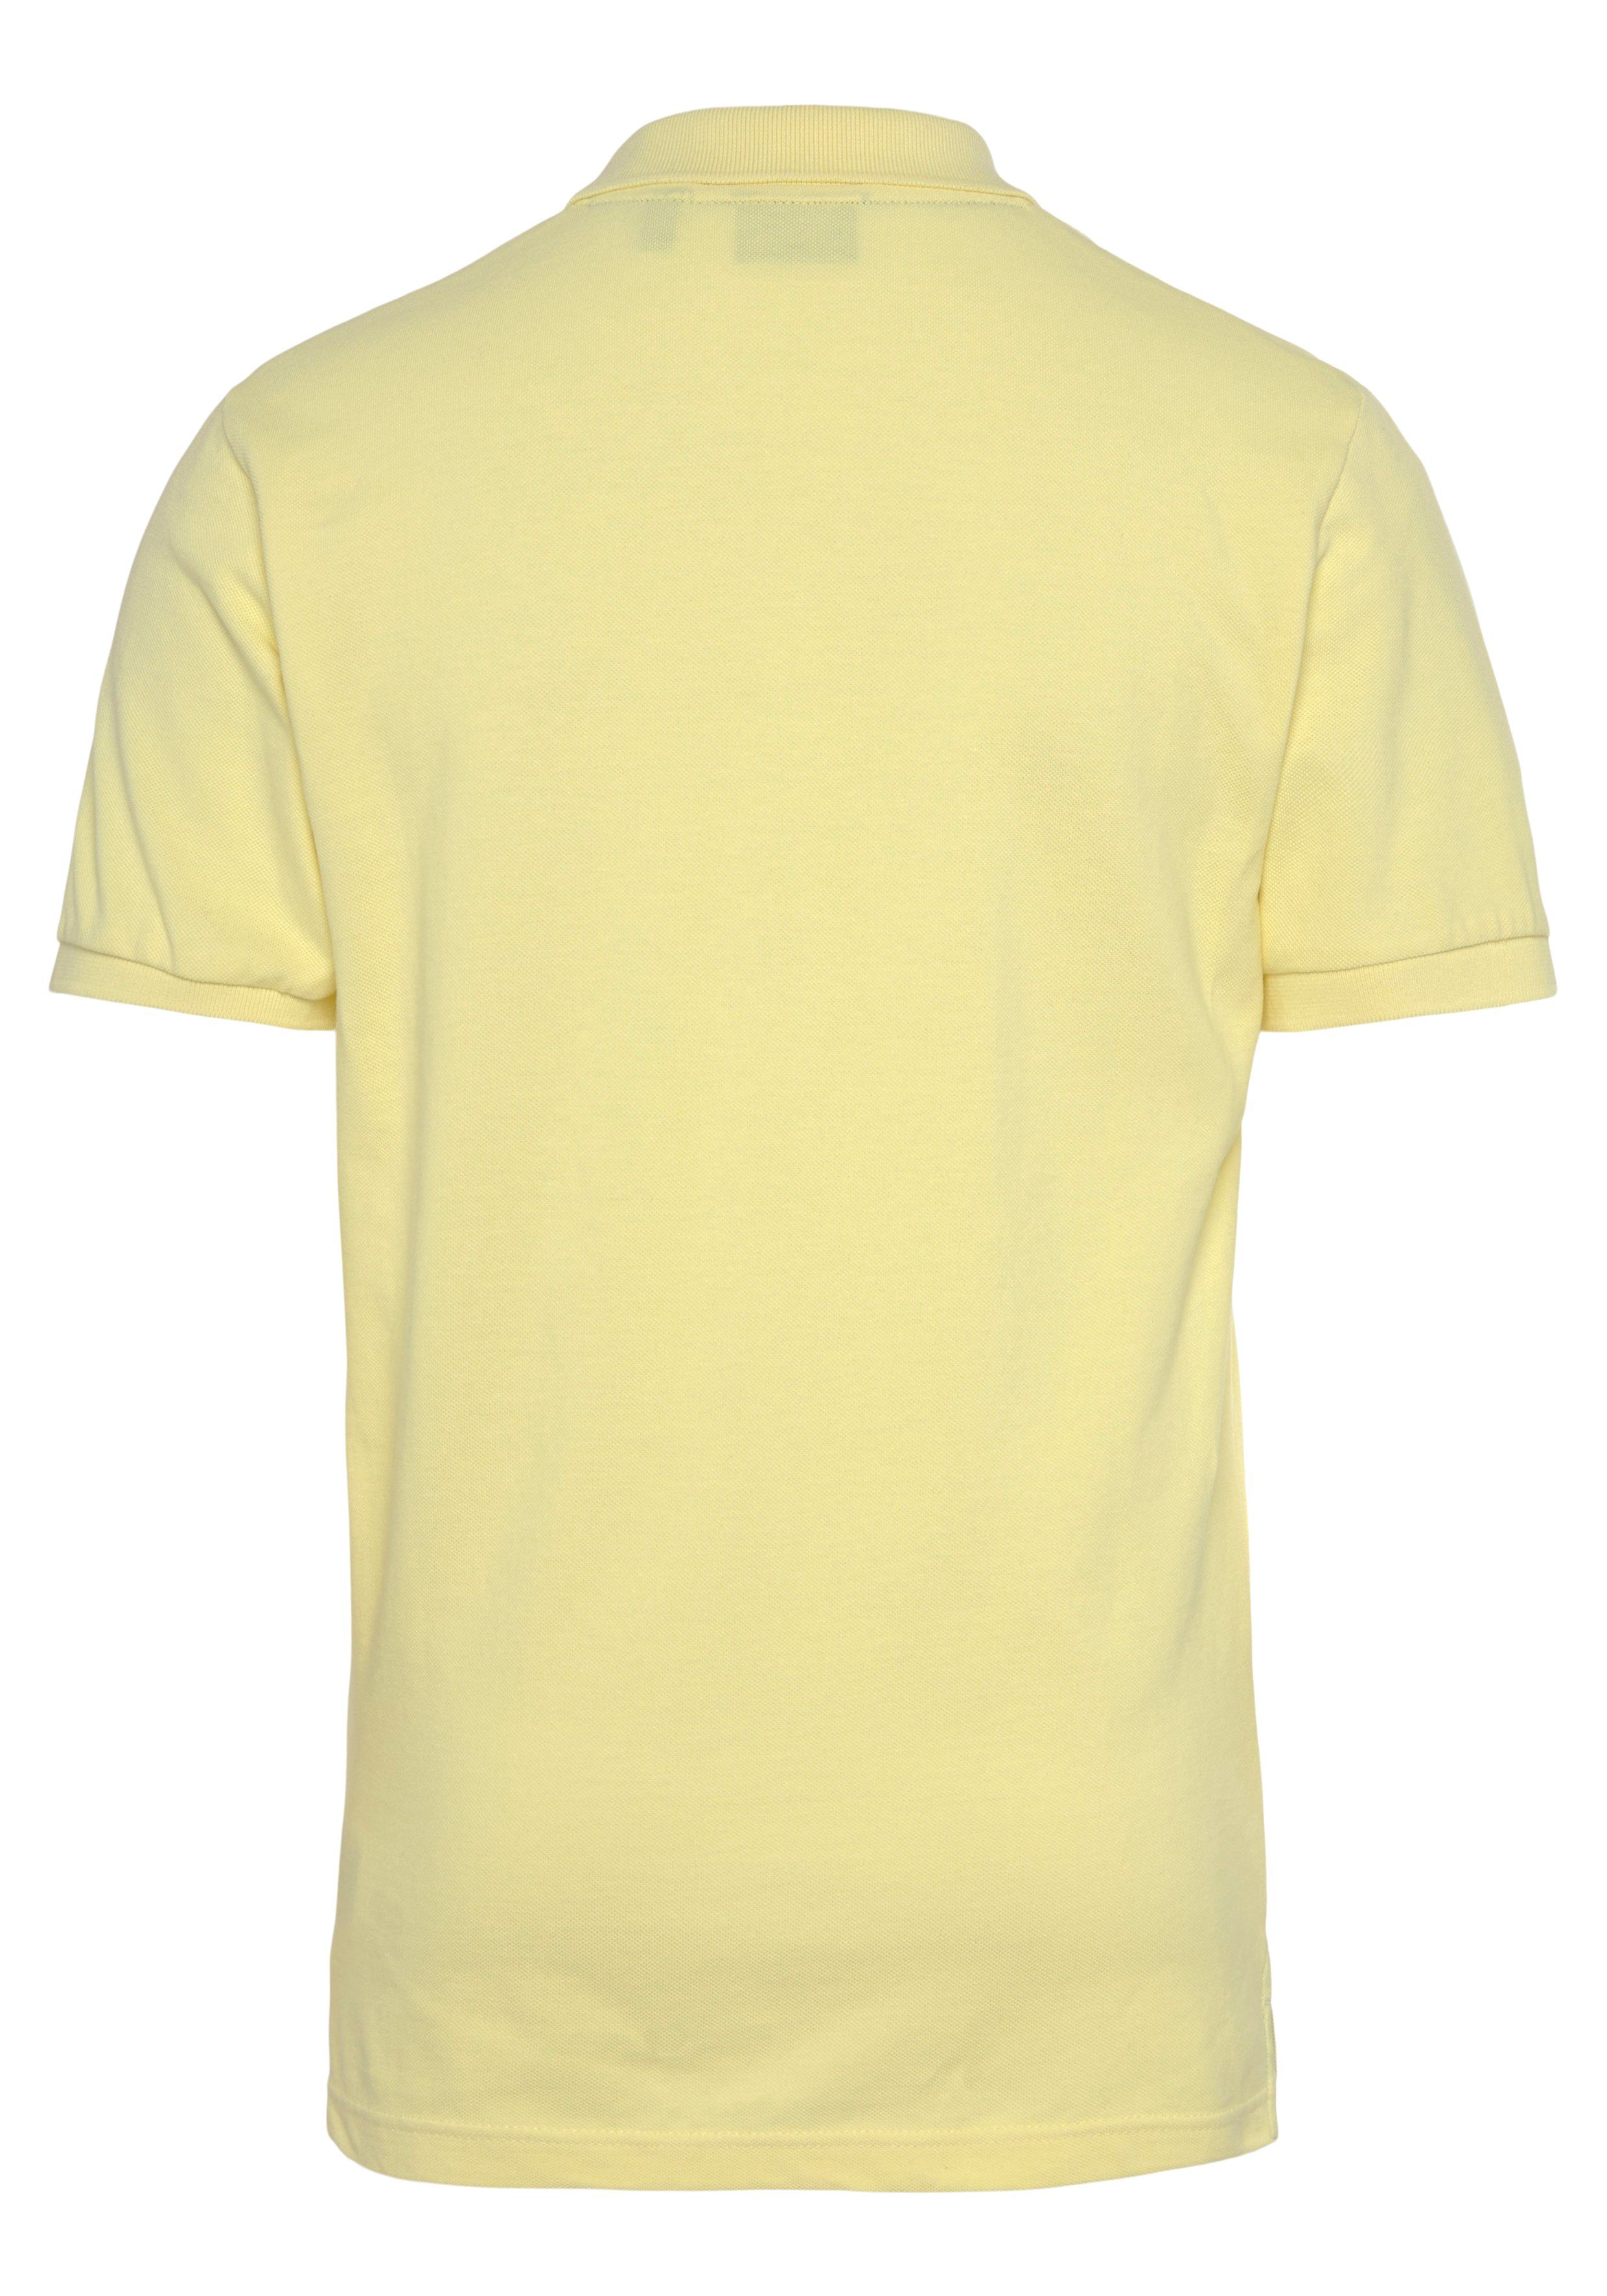 lem.yellow Piqué-Polo Regular Fit, Gant Casual, Smart Premium PIQUE Shirt, MD. RUGGER Qualität Poloshirt KA